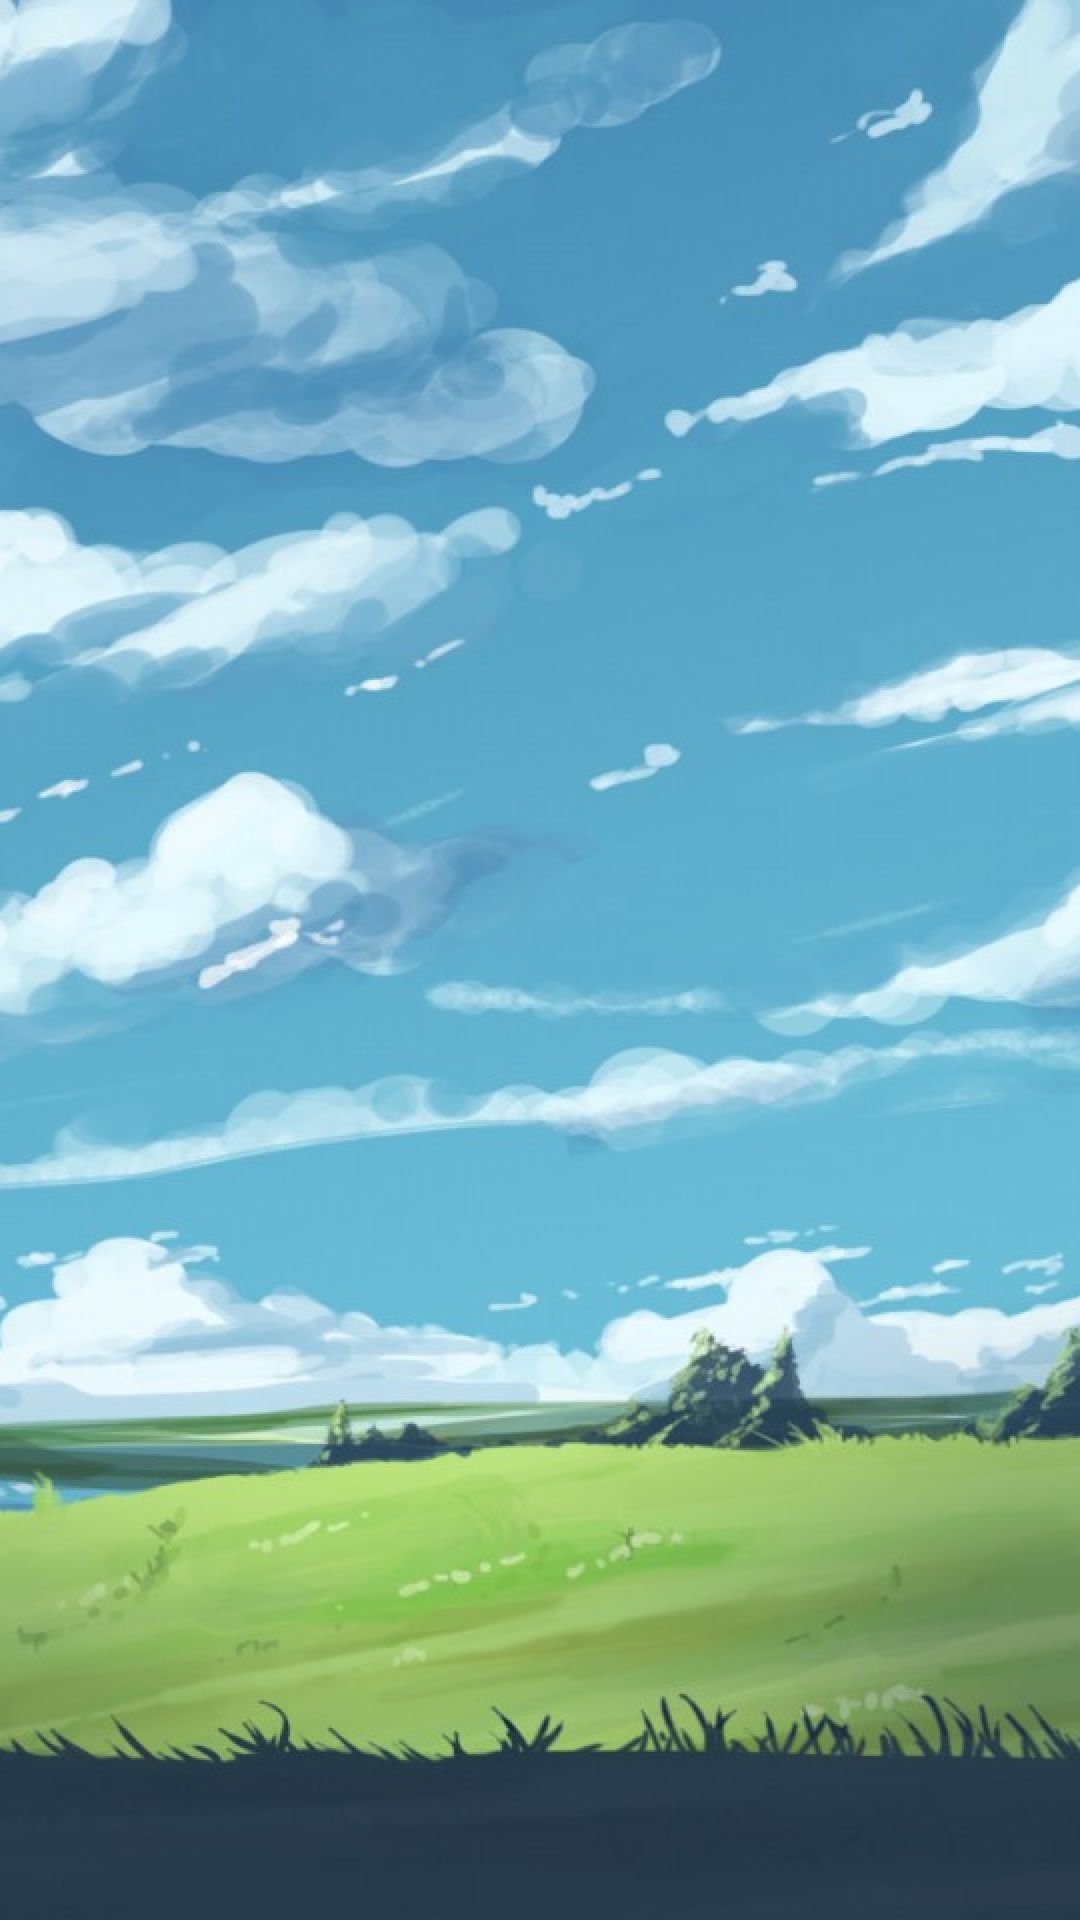 T0nii On Kool In iPhone Wallpaper Landscape Anime